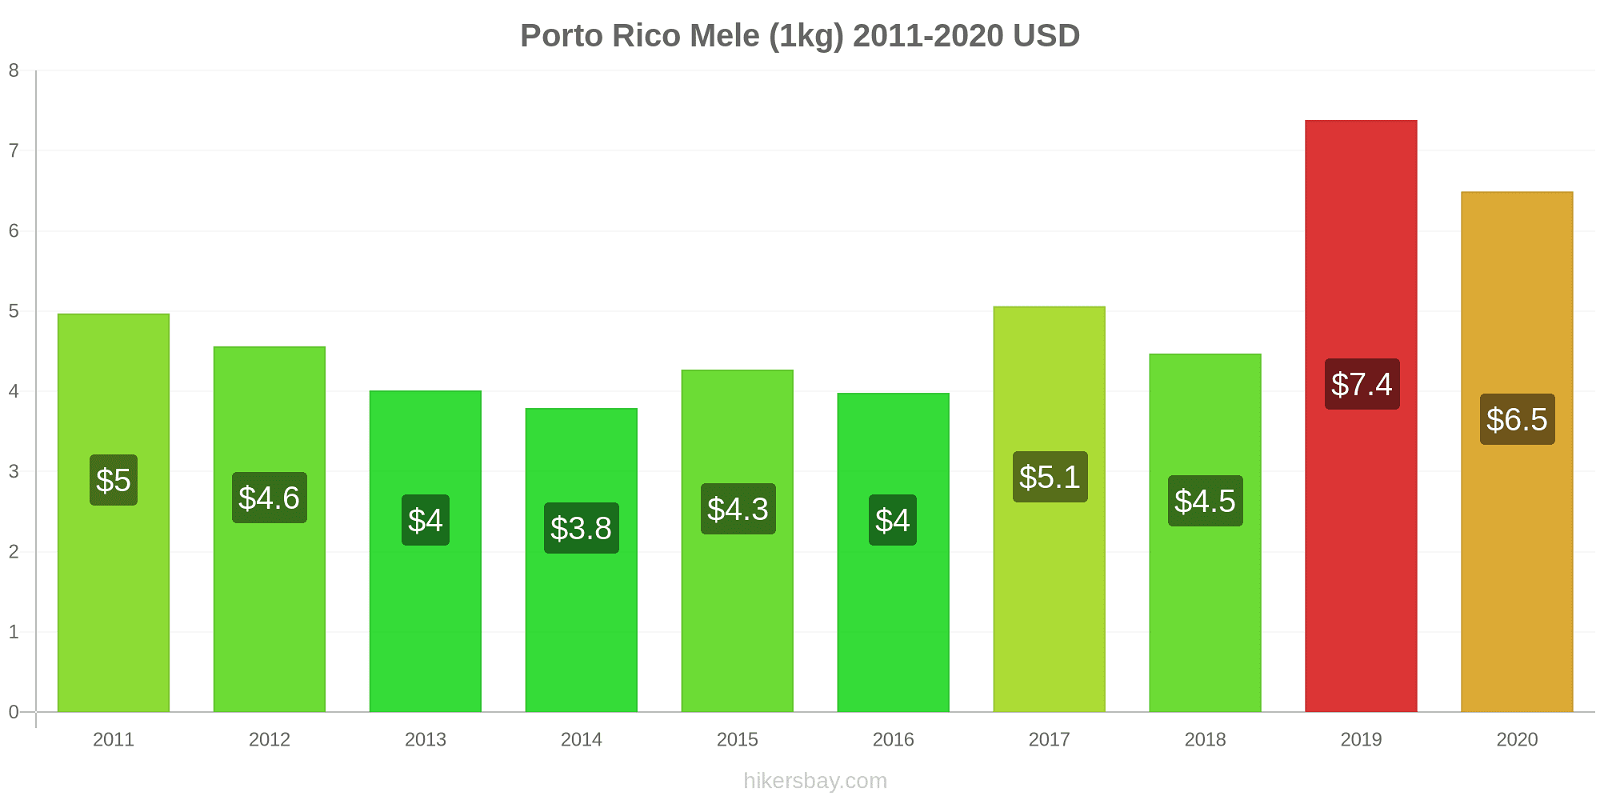 Porto Rico variazioni di prezzo Mele (1kg) hikersbay.com